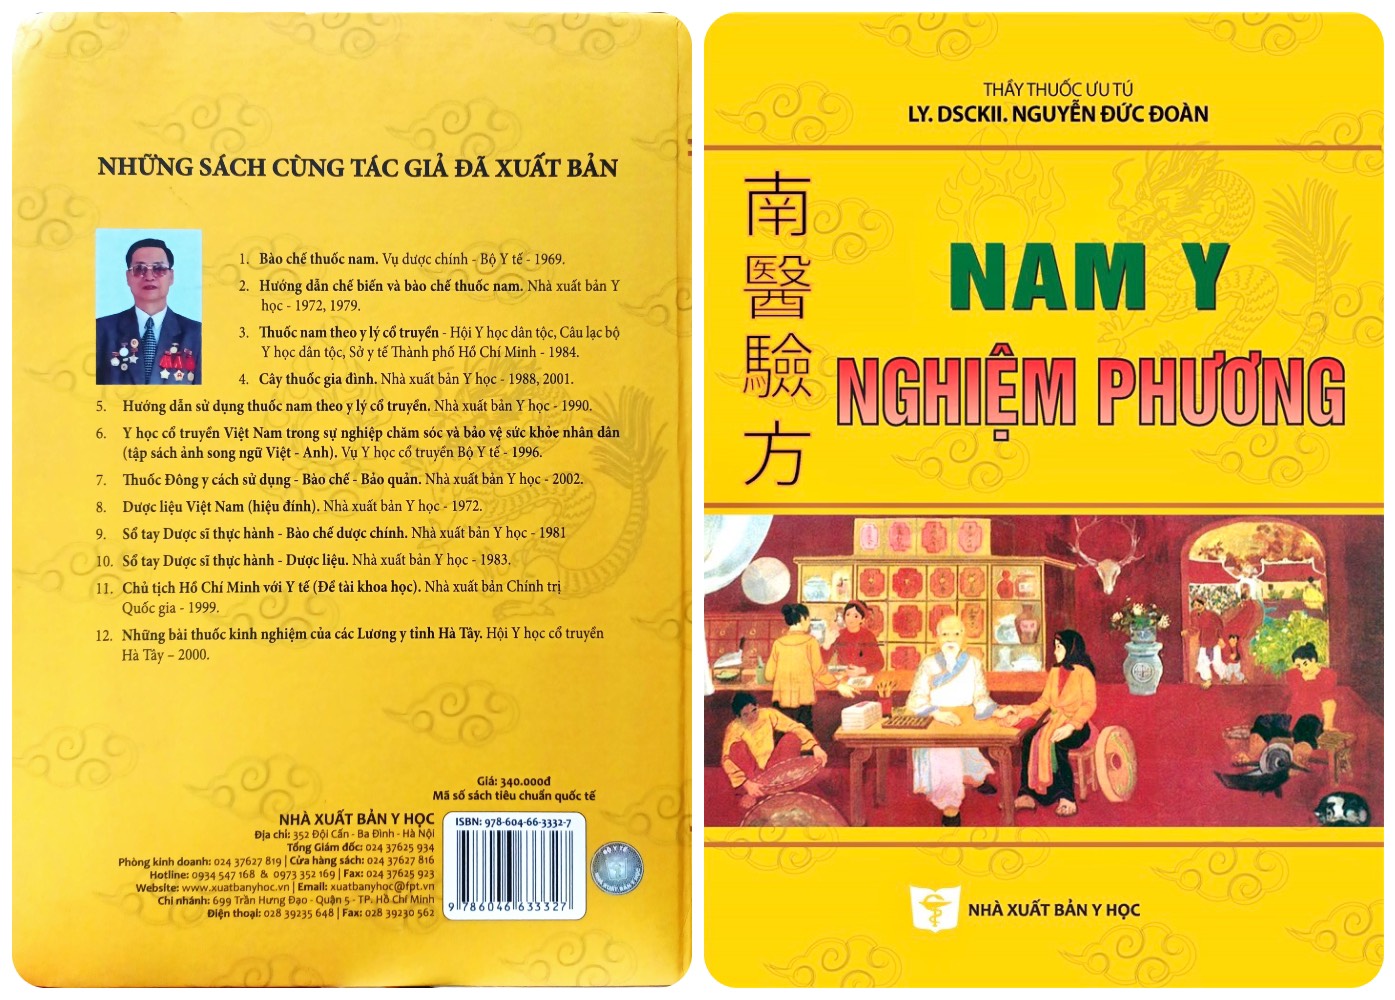 Cuốn sách "Nam y Nghiệm phương" của Thầy thuốc ưu tú,DSCKII, Lương y Nguyễn Đức Đoàn.